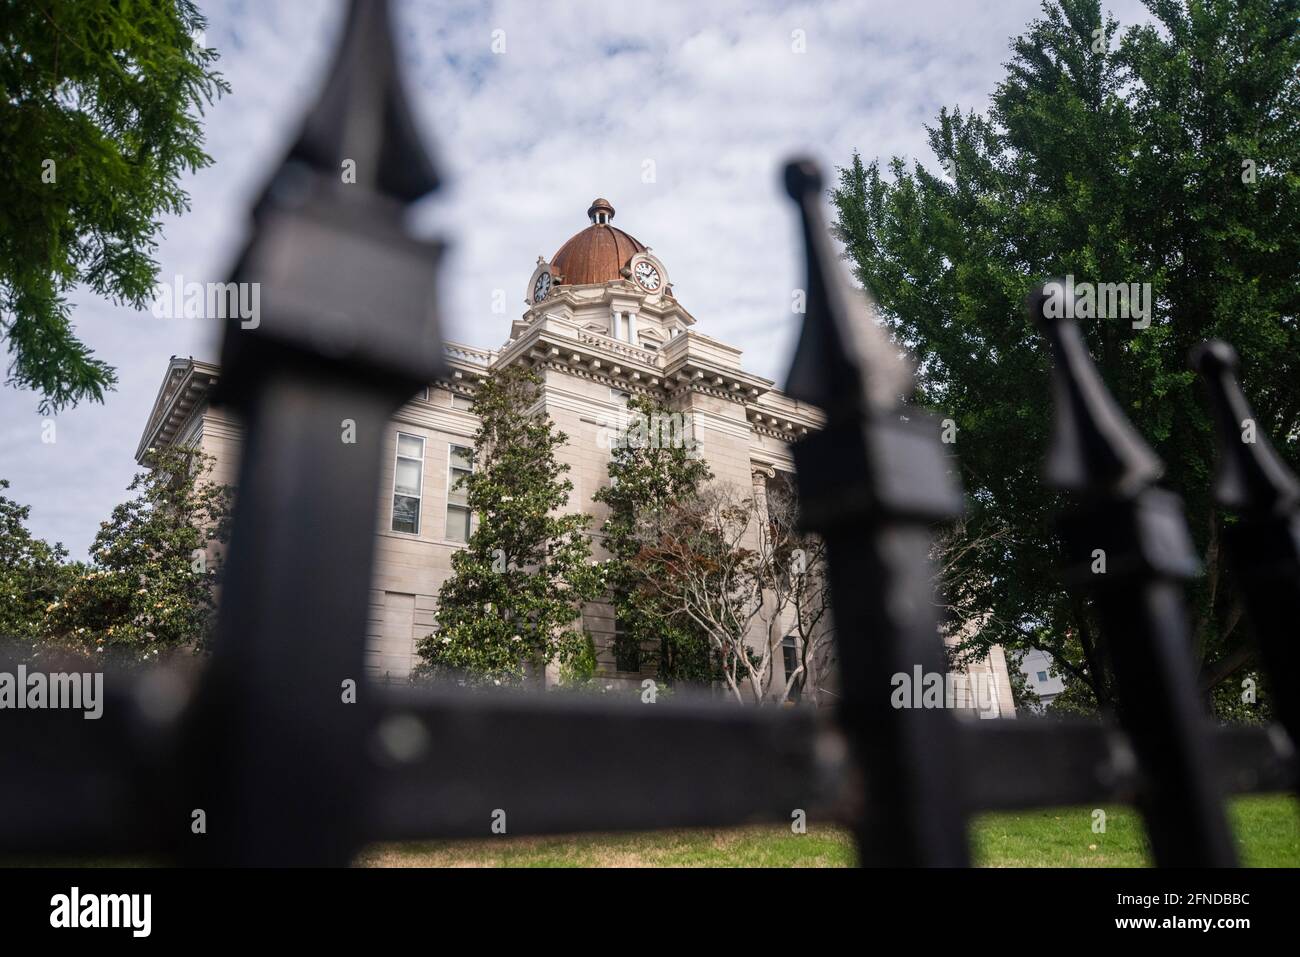 Il tribunale della contea di Lee a Tupelo, Mississippi, USA, incorniciato da una recinzione in ferro battuto che circonda l'edificio. Foto Stock